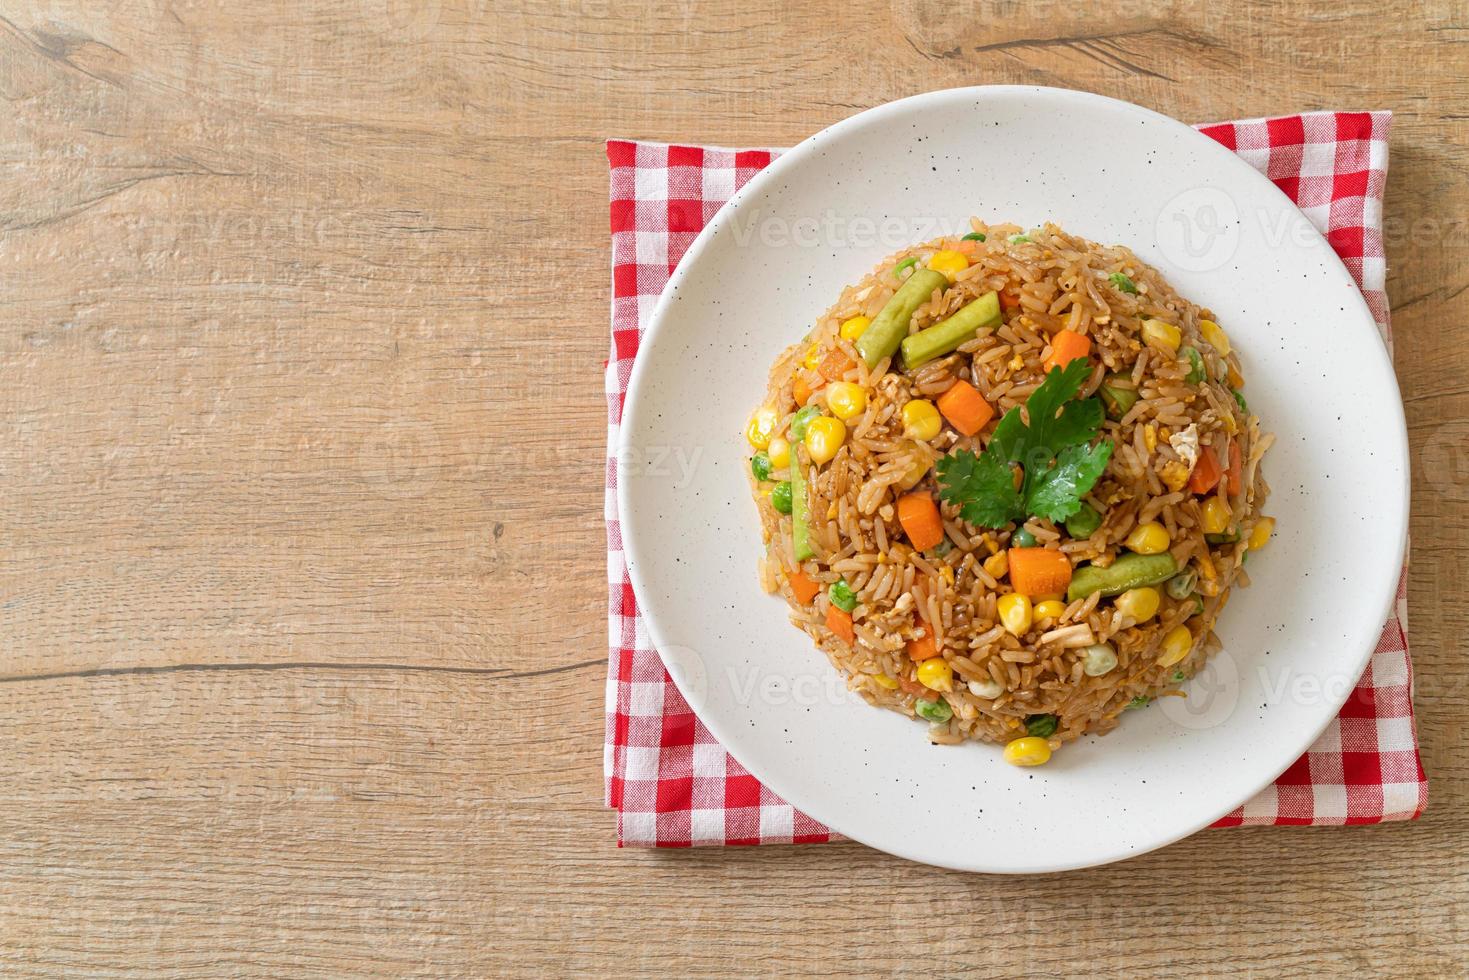 arroz frito com ervilha, cenoura e milho - comida vegetariana e saudável foto